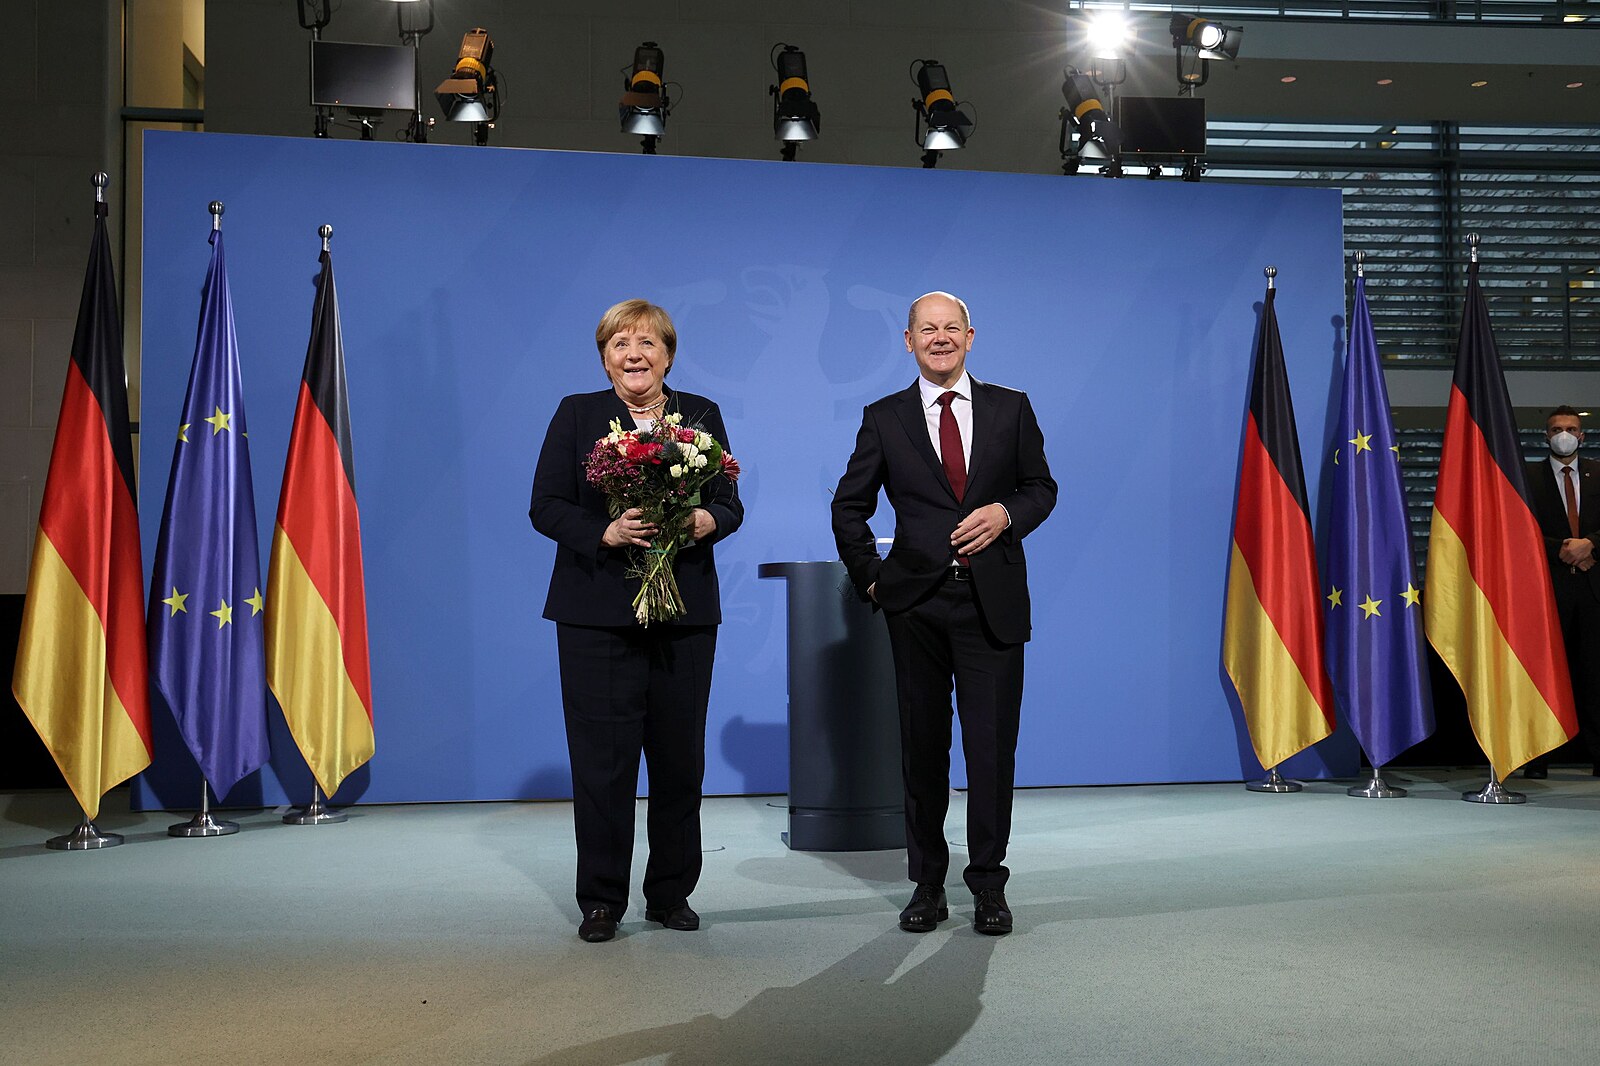 Scholz se stal německým kancléřem, Merkelová skončila po 16 letech -  iDNES.cz